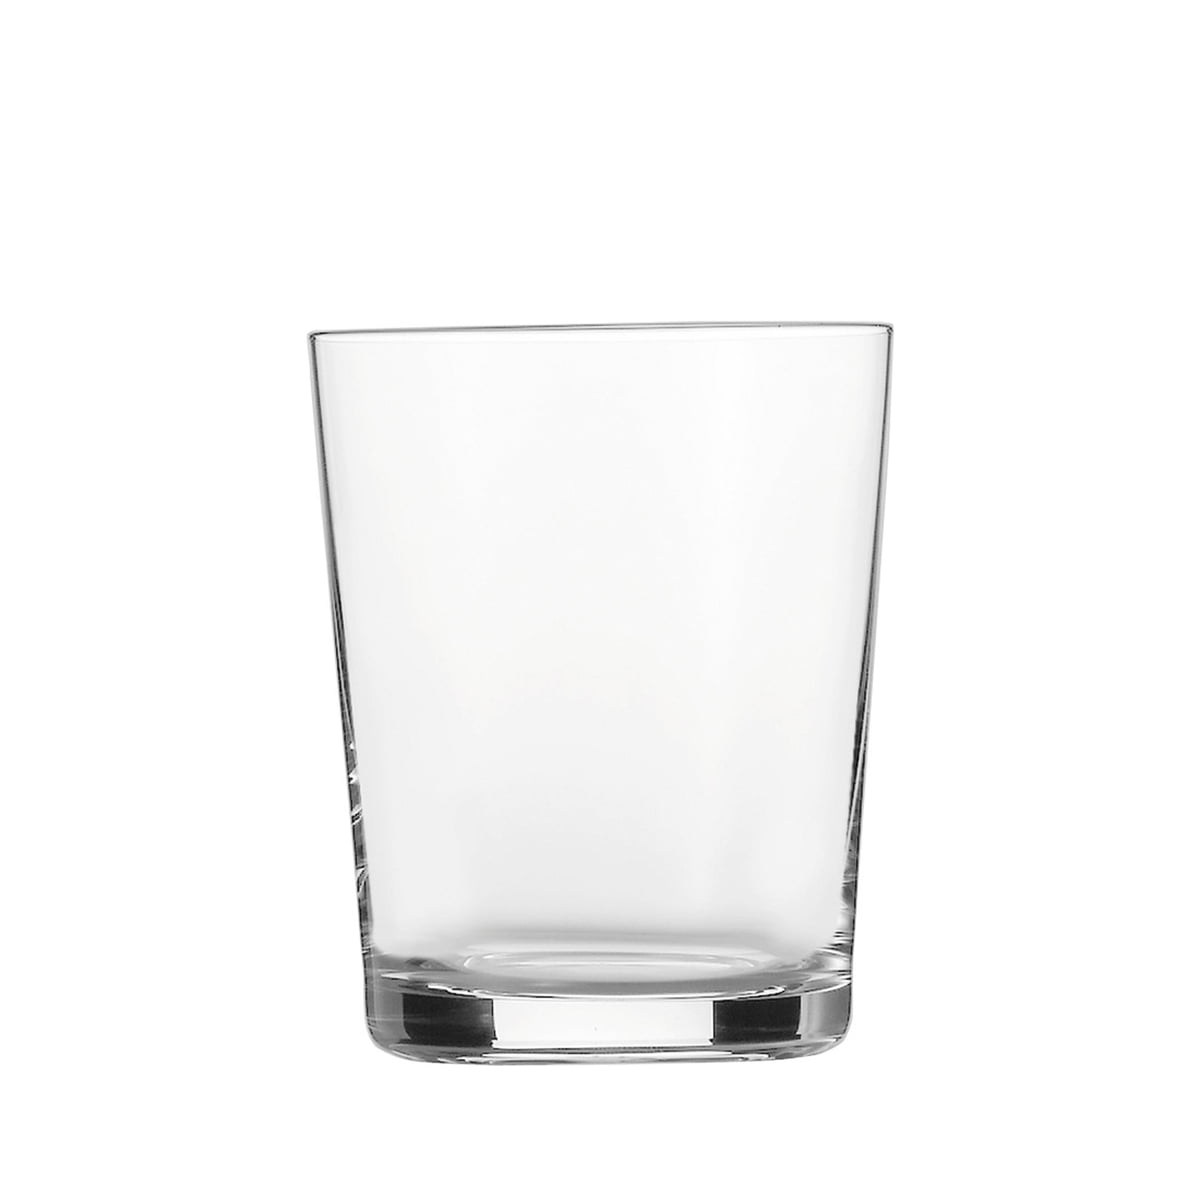 3 380 6er Set Getränkeglas Glas 387ml Schott Zwiesel Softdrink Nr 